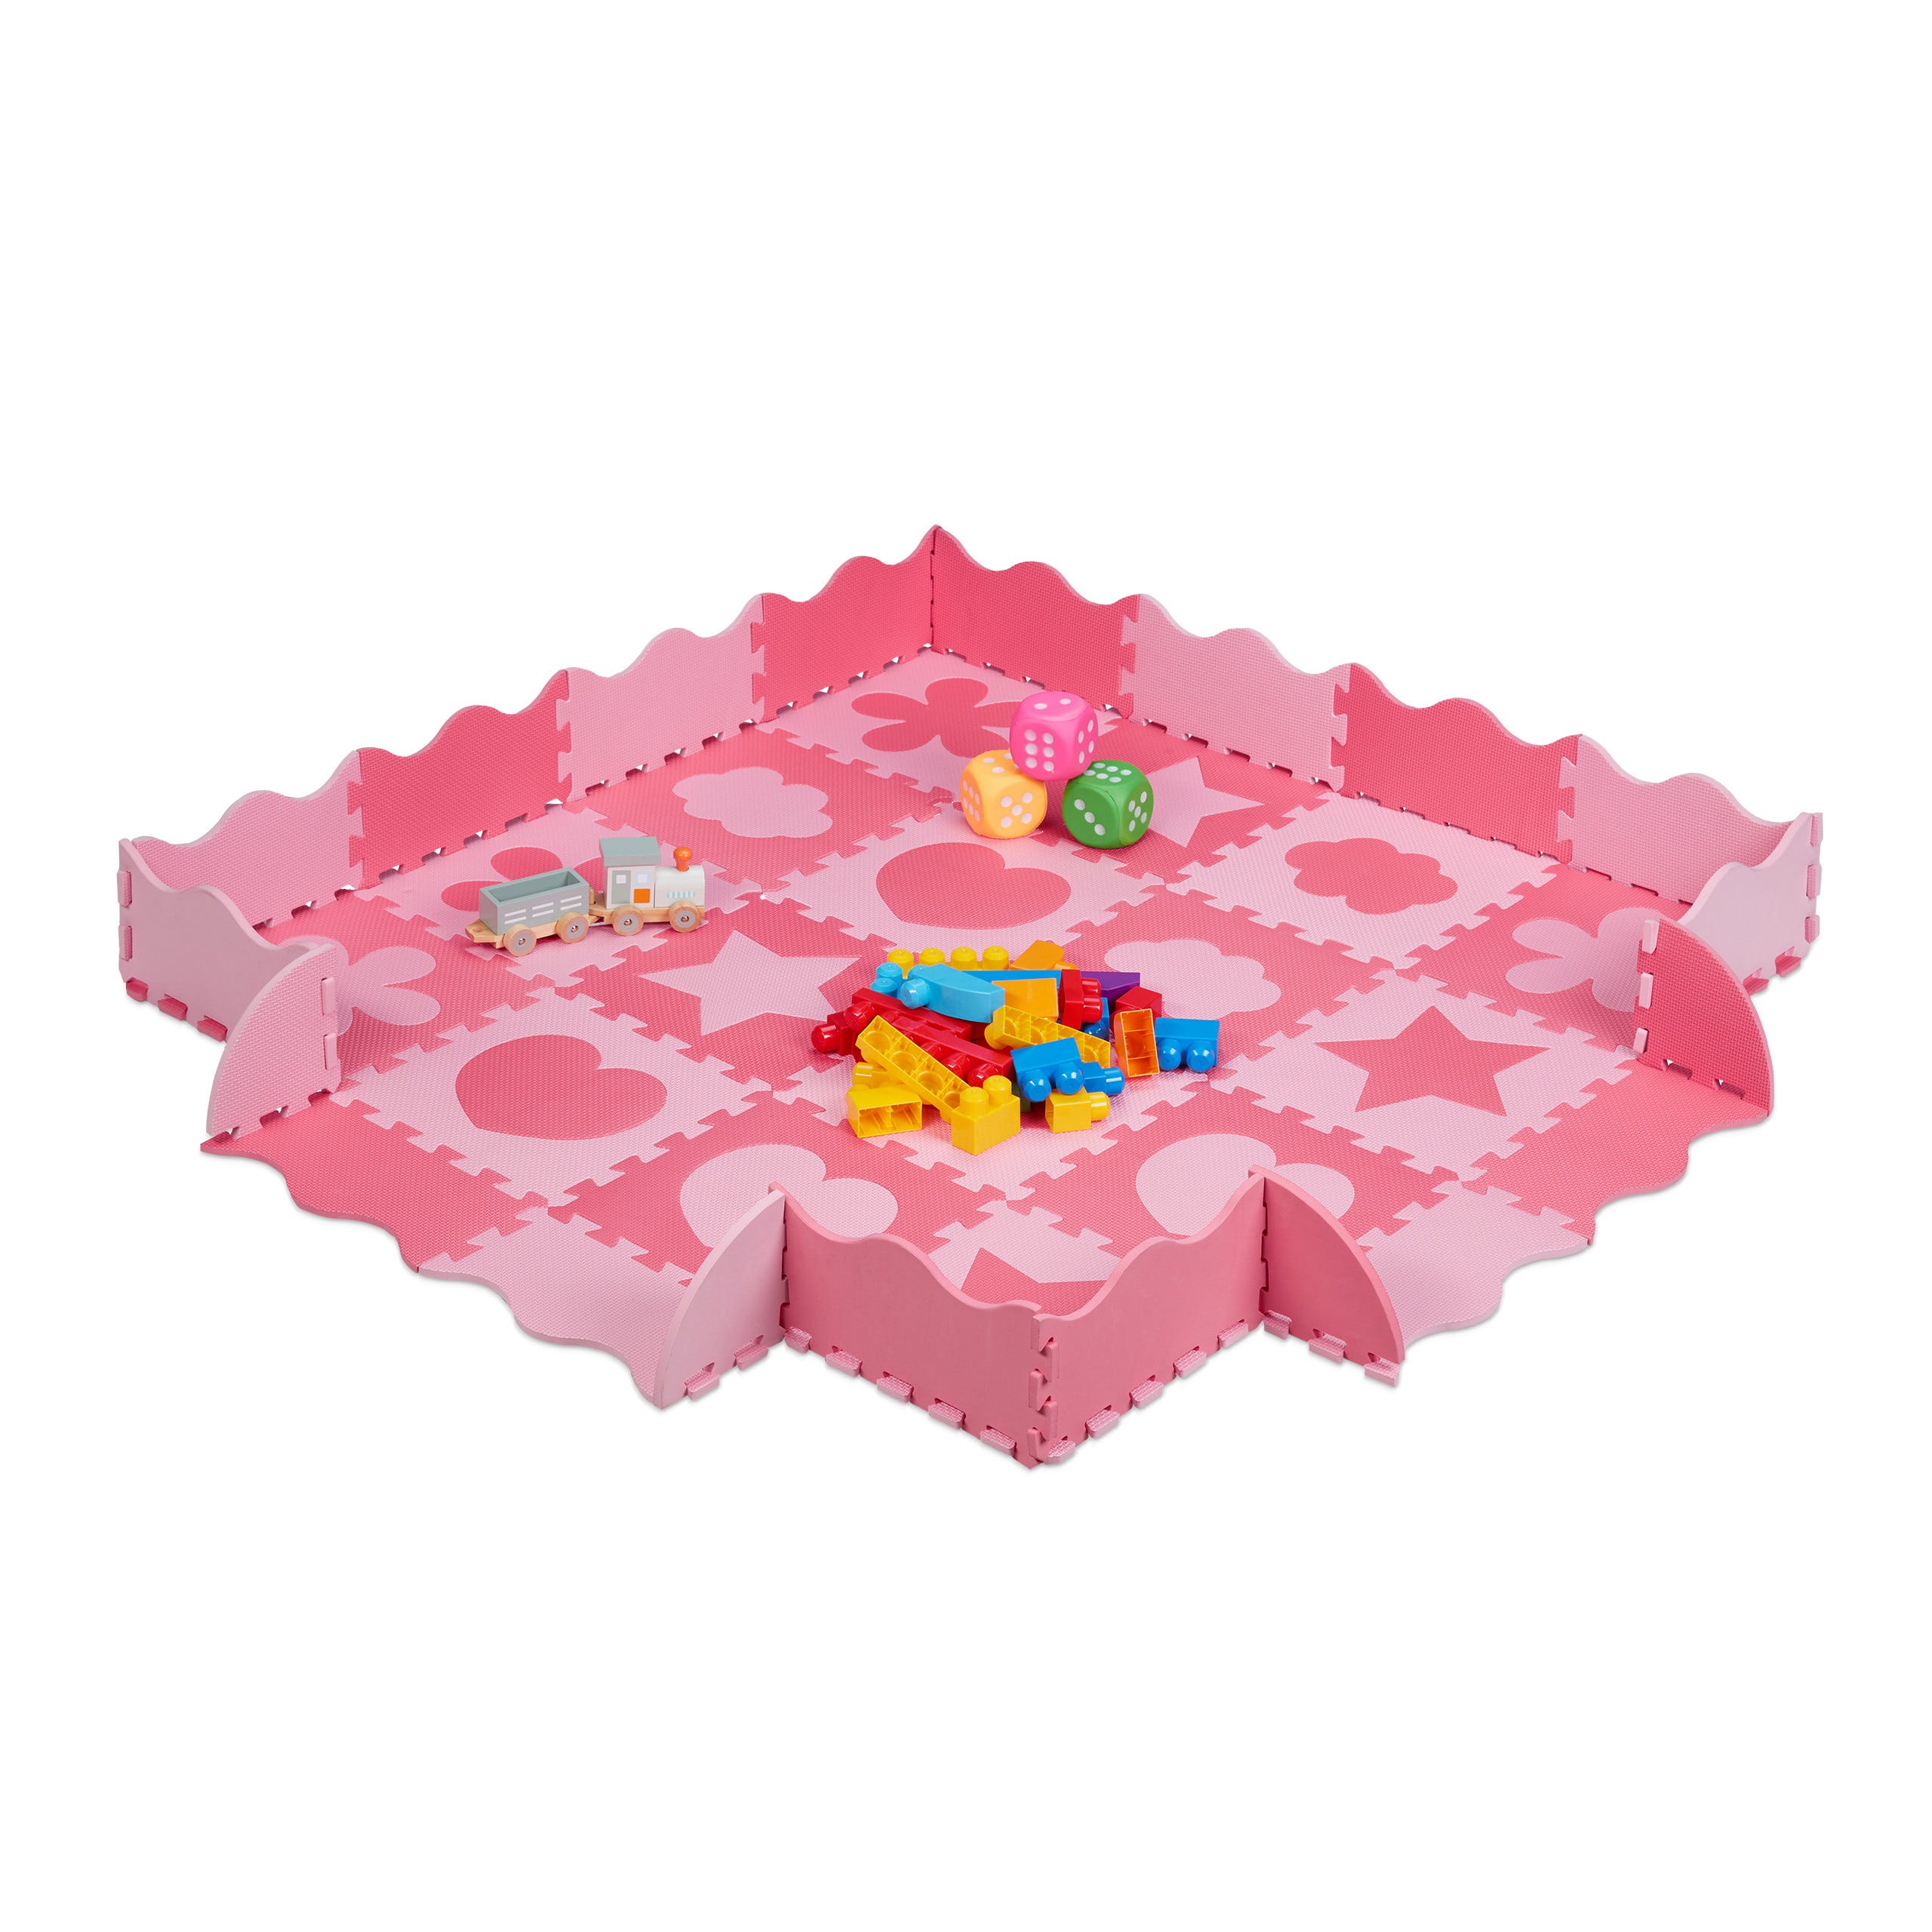 Relaxdays Tapis de sol puzzle 52 pièces, mousse EVA, sans polluants, 1,4  m2, dalle jeu bébé bord, diff motifs, rose